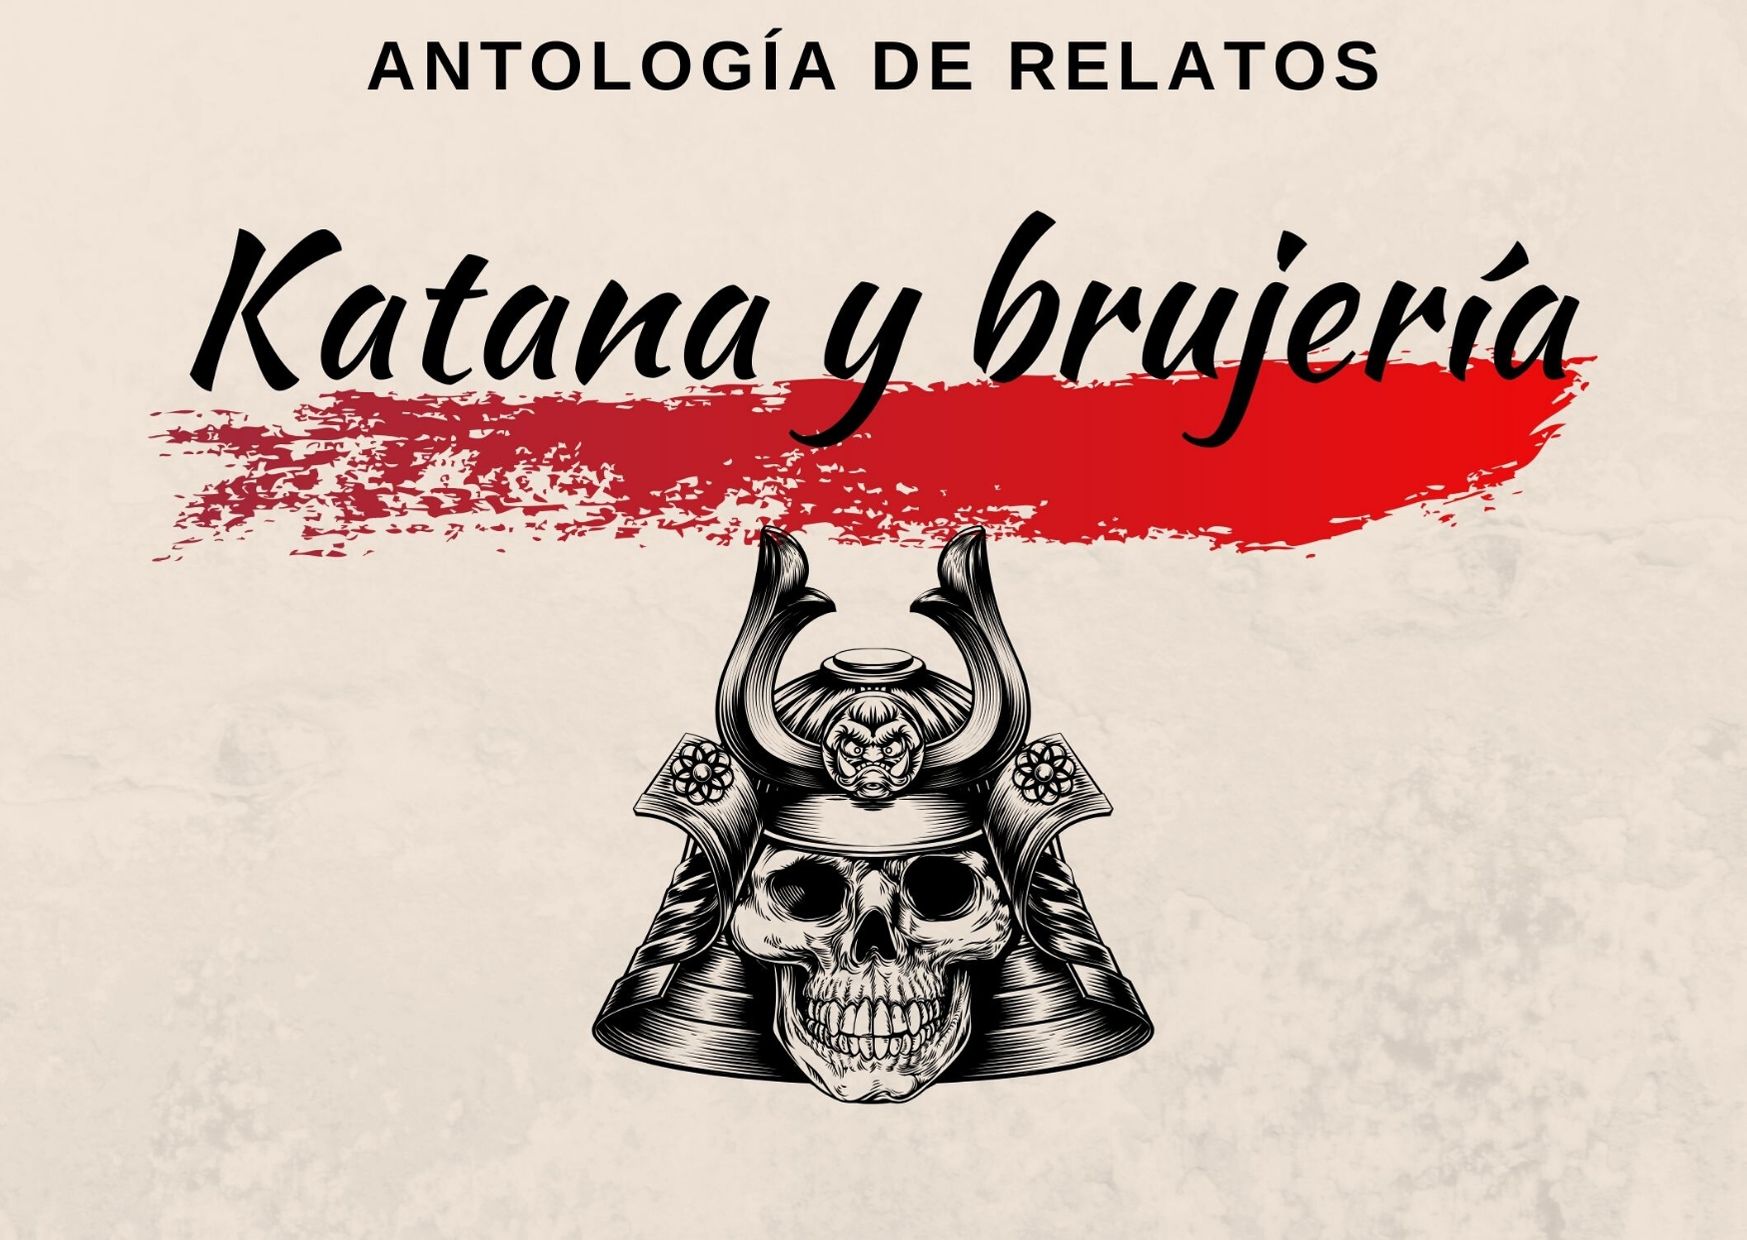 Katana y brujería, antología de relatos